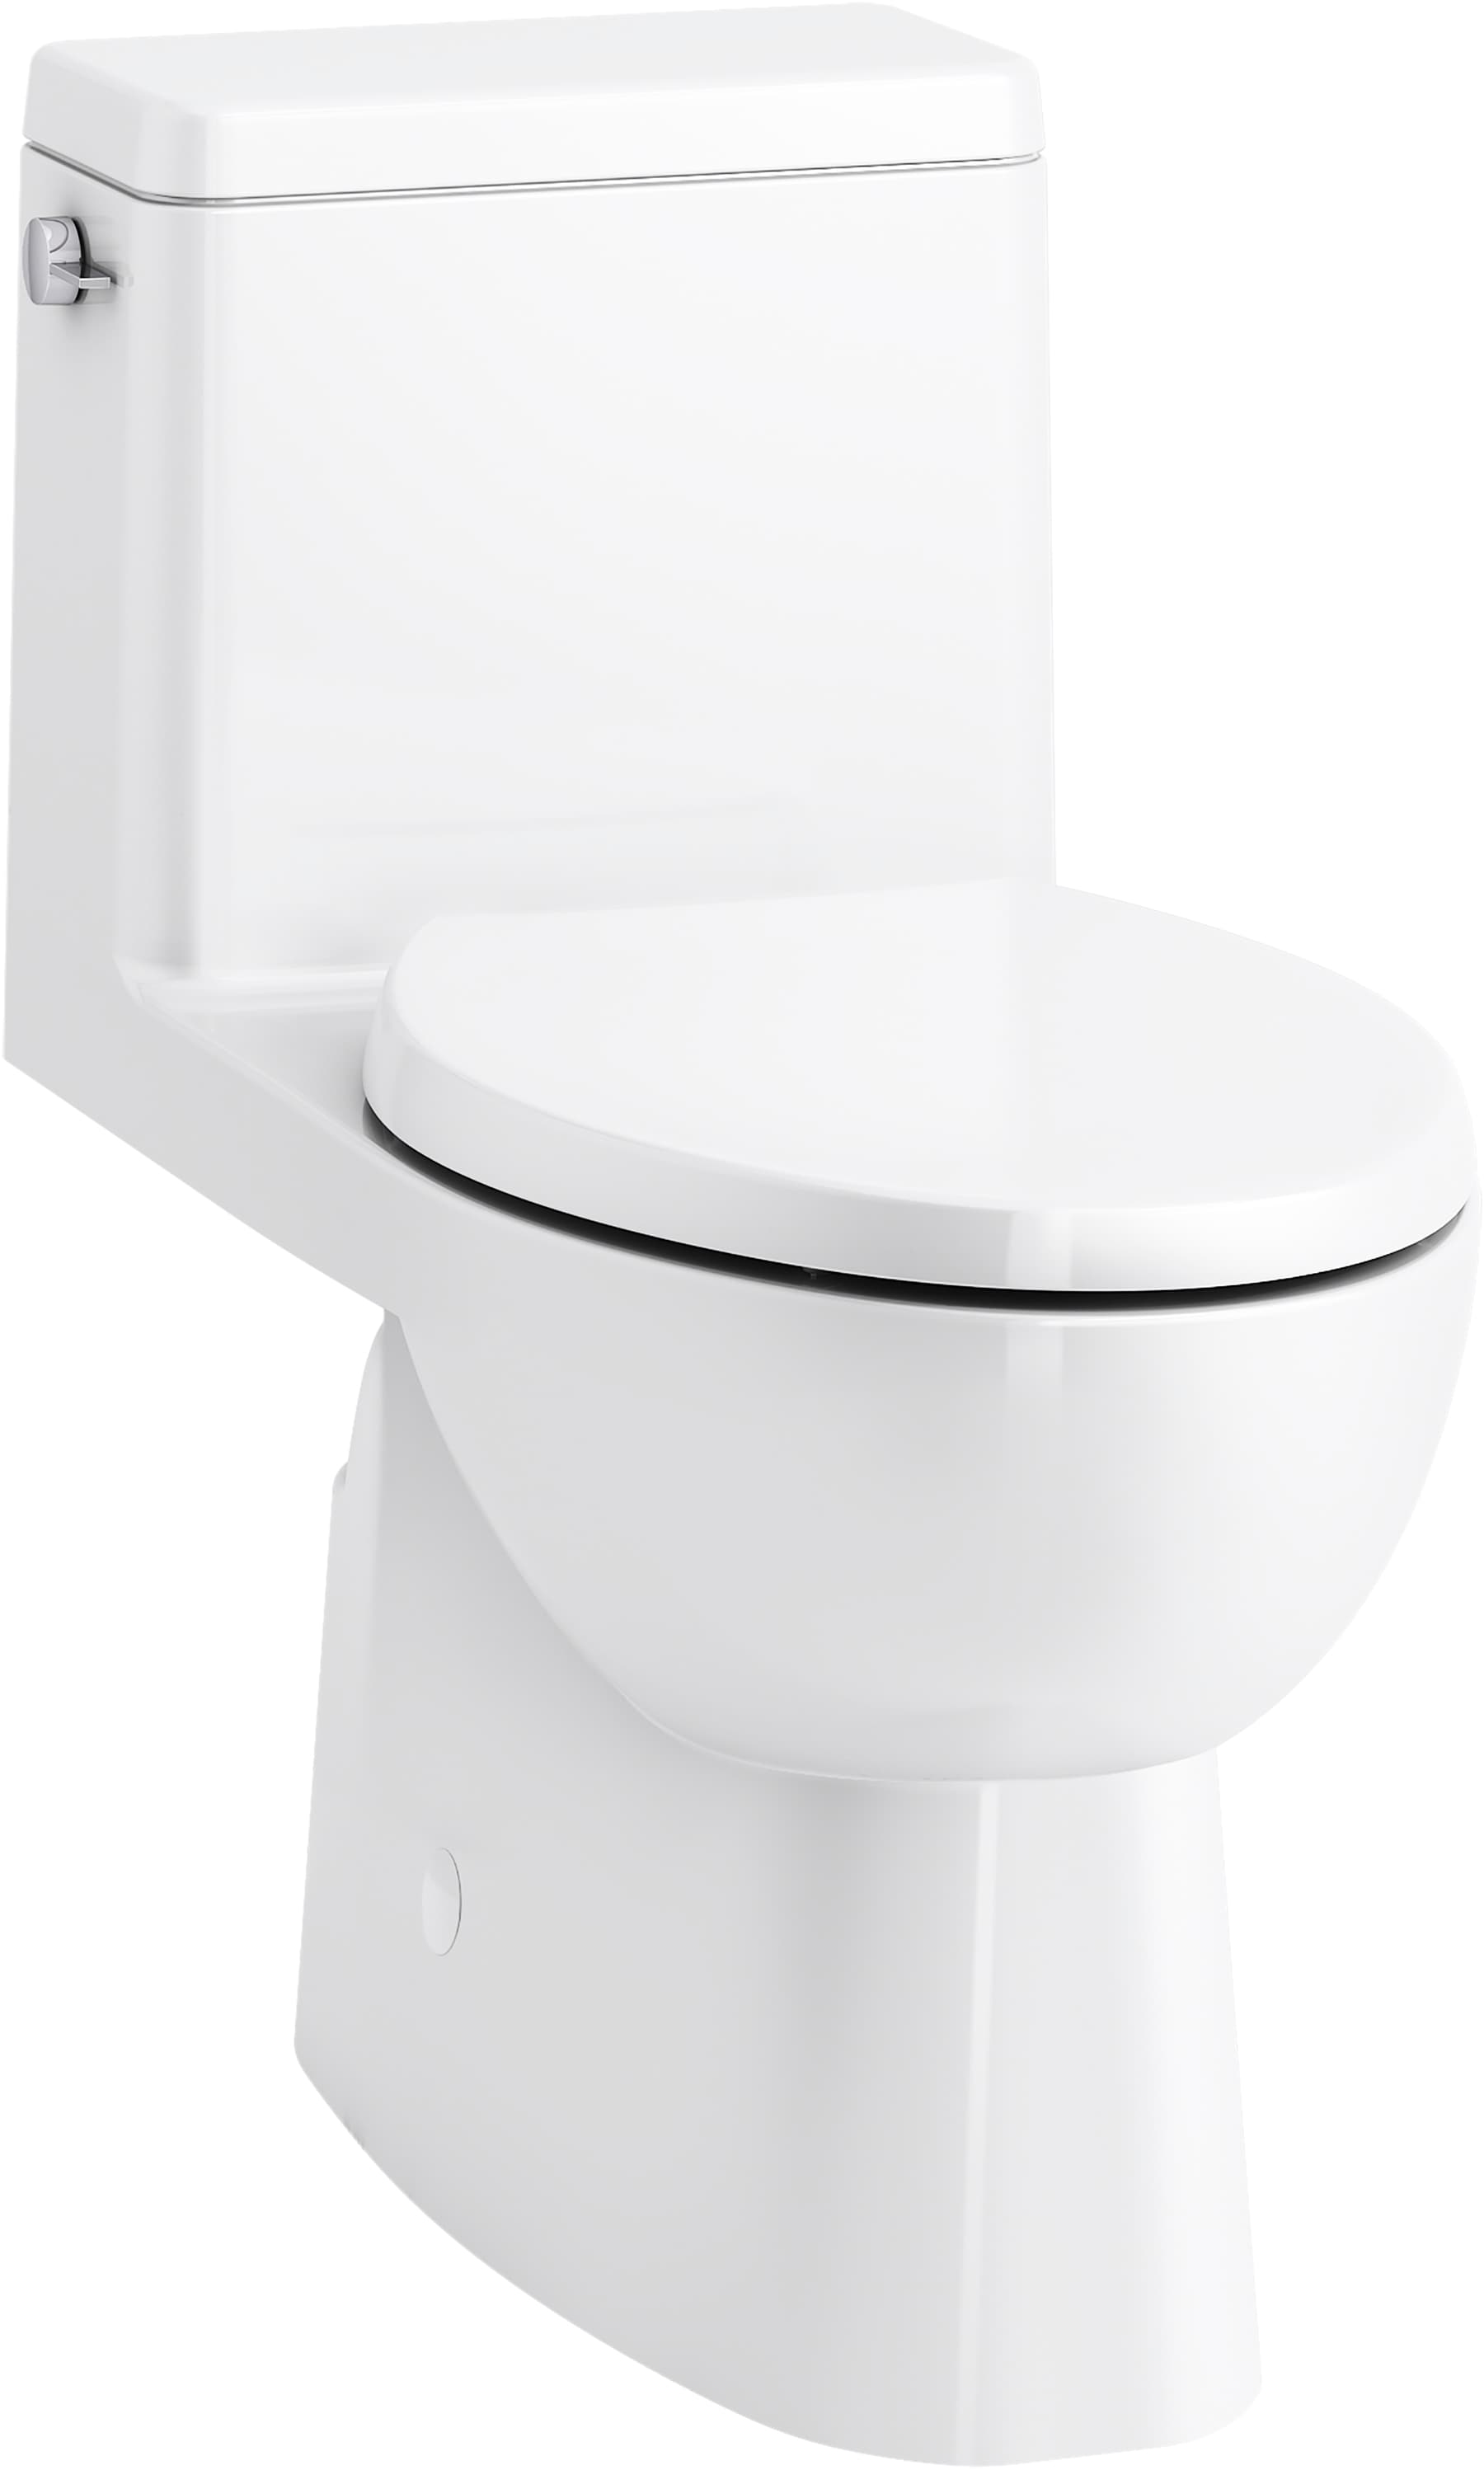 KOHLER Touchless Flush Toilets and Kit